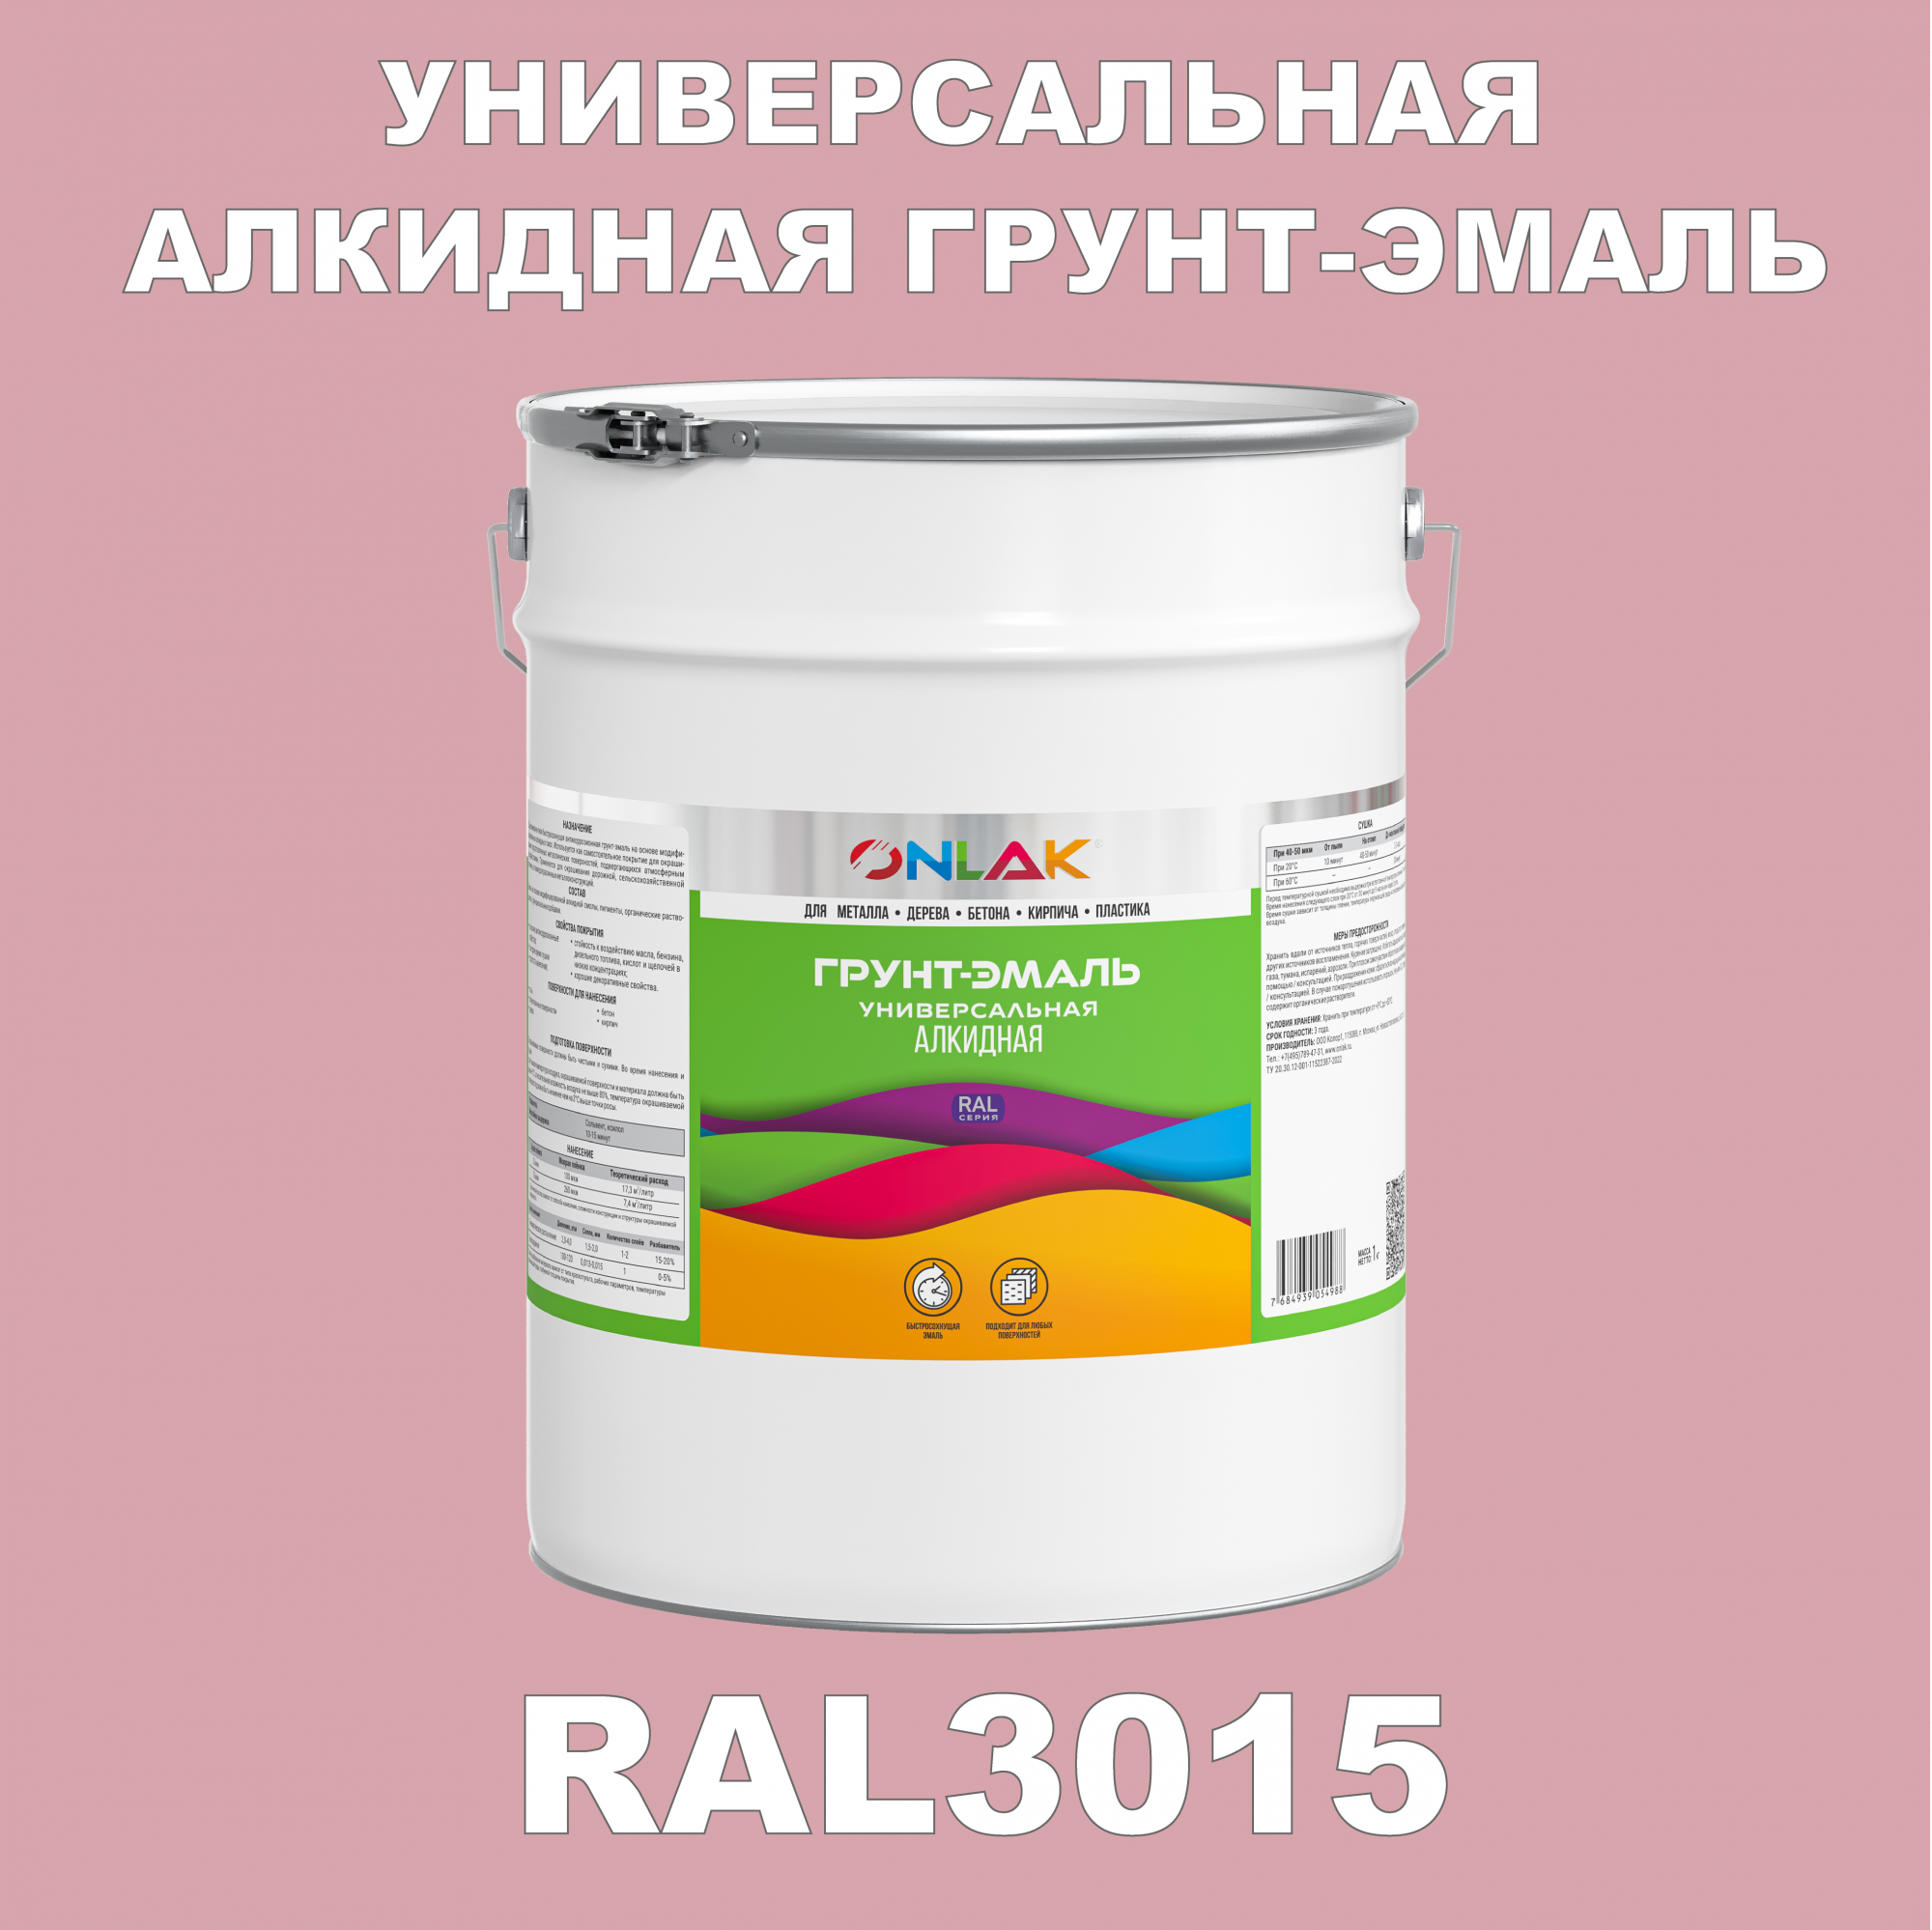 Грунт-эмаль ONLAK 1К RAL3015 антикоррозионная алкидная по металлу по ржавчине 20 кг грунт эмаль yollo по ржавчине алкидная серая 0 9 кг